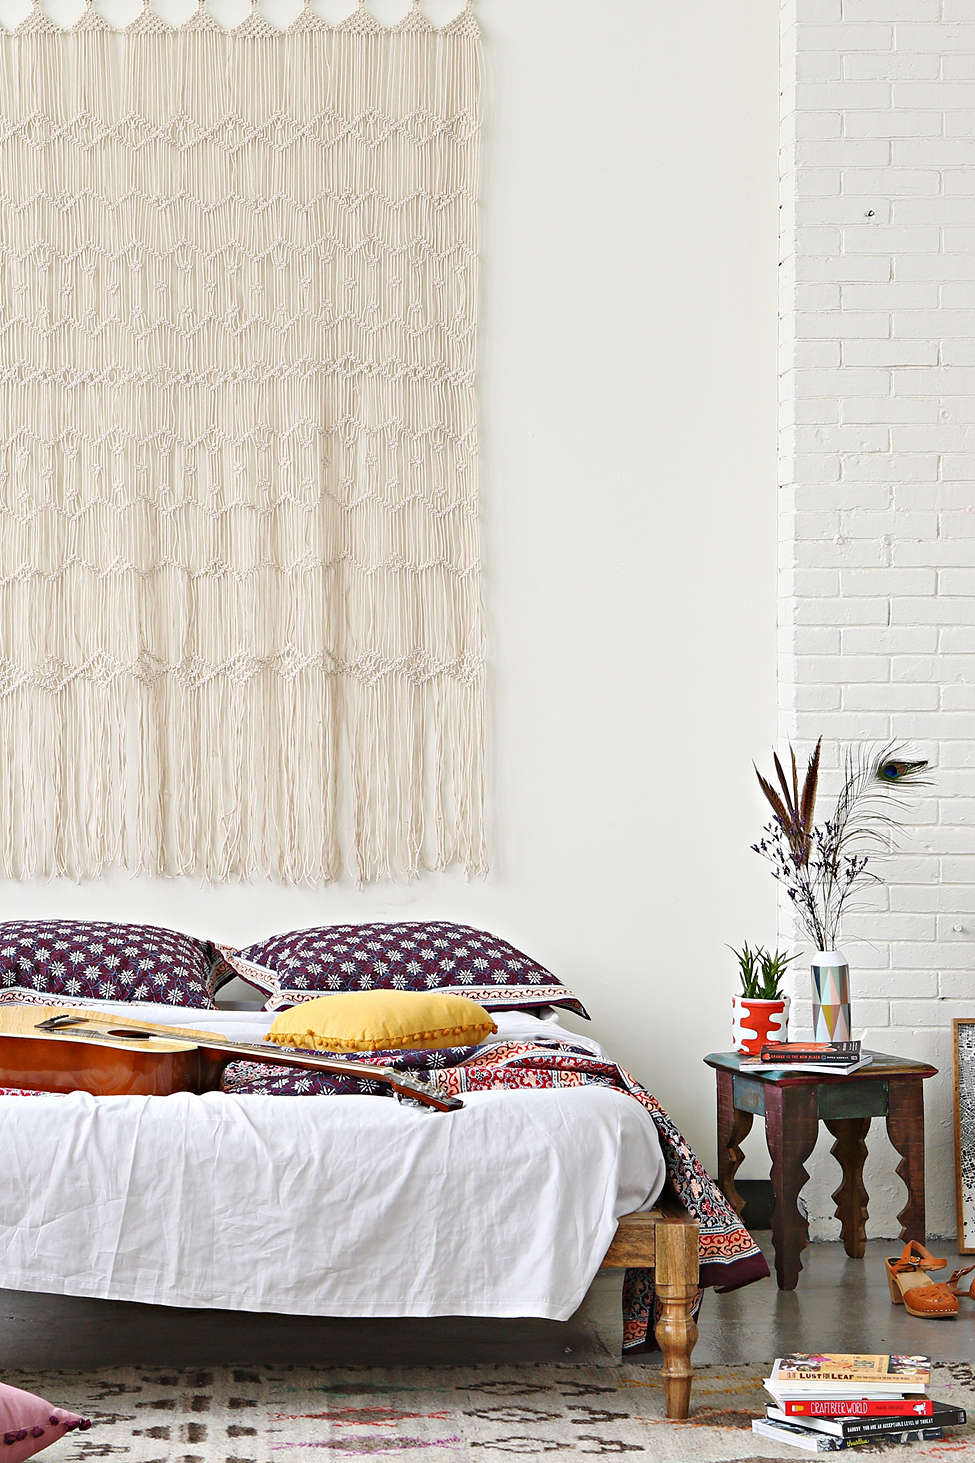 המיטה הבוהמיינית 629$ עשויה עץ מנגו תמונה מאתר urban outfitters